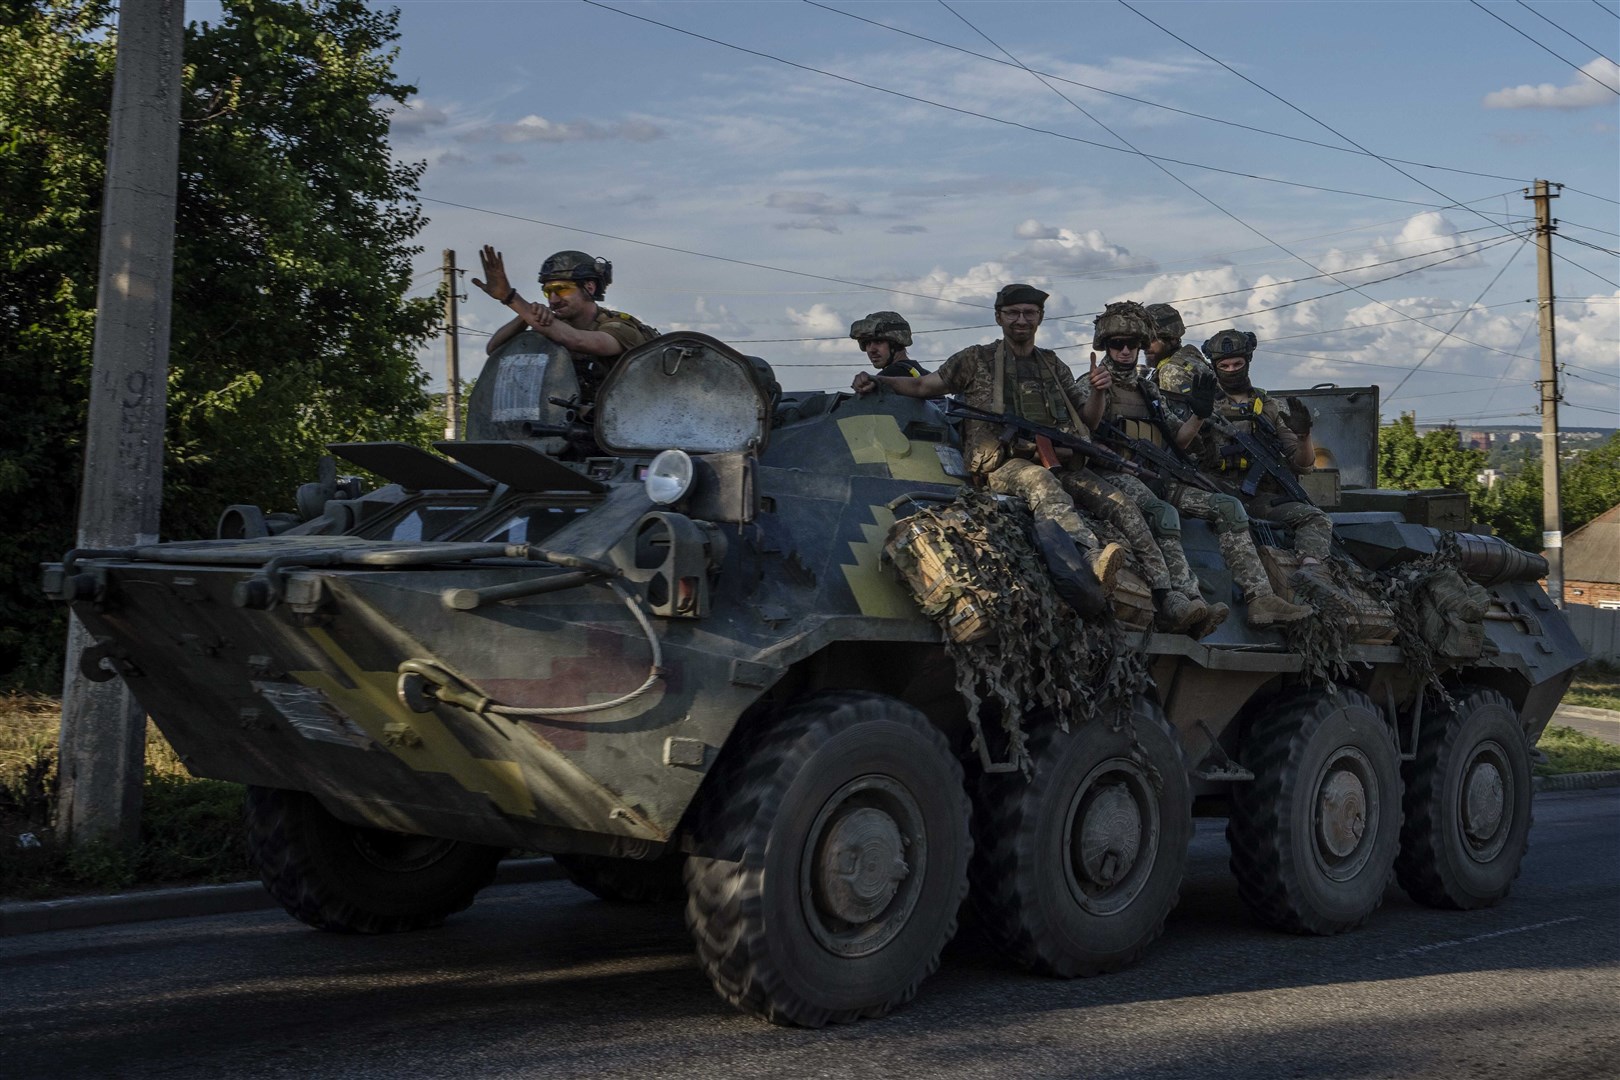 Ukrainian soldiers ride a tank, on a road in Donetsk region, eastern Ukraine (Nariman El-Mofty/AP)